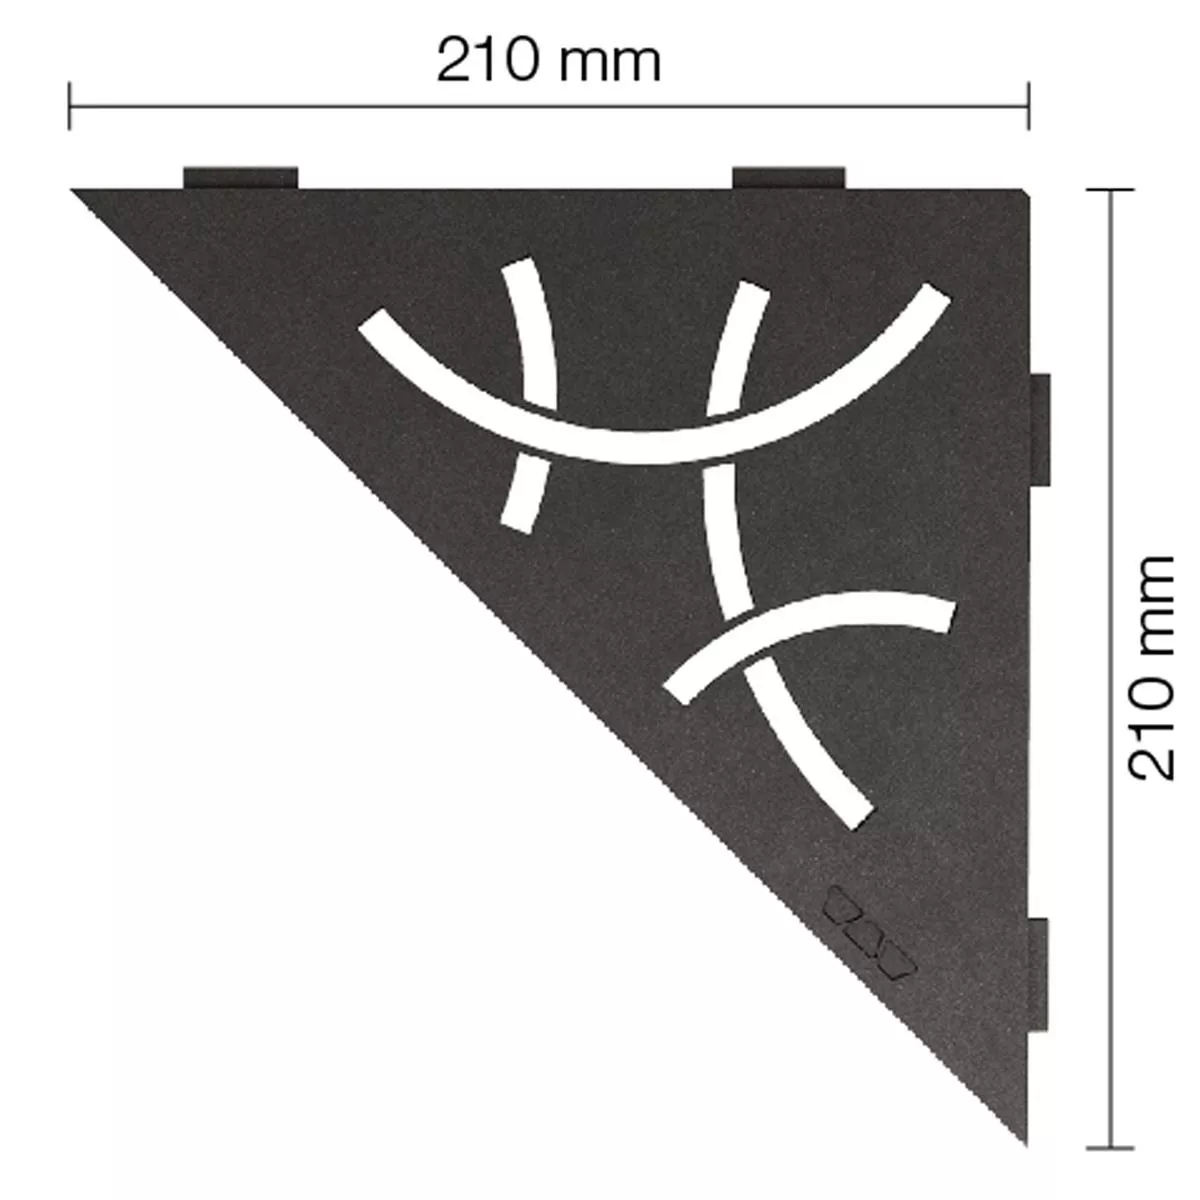 Schlüter estantería de pared triangular 21x21 cm Curve antracita oscuro